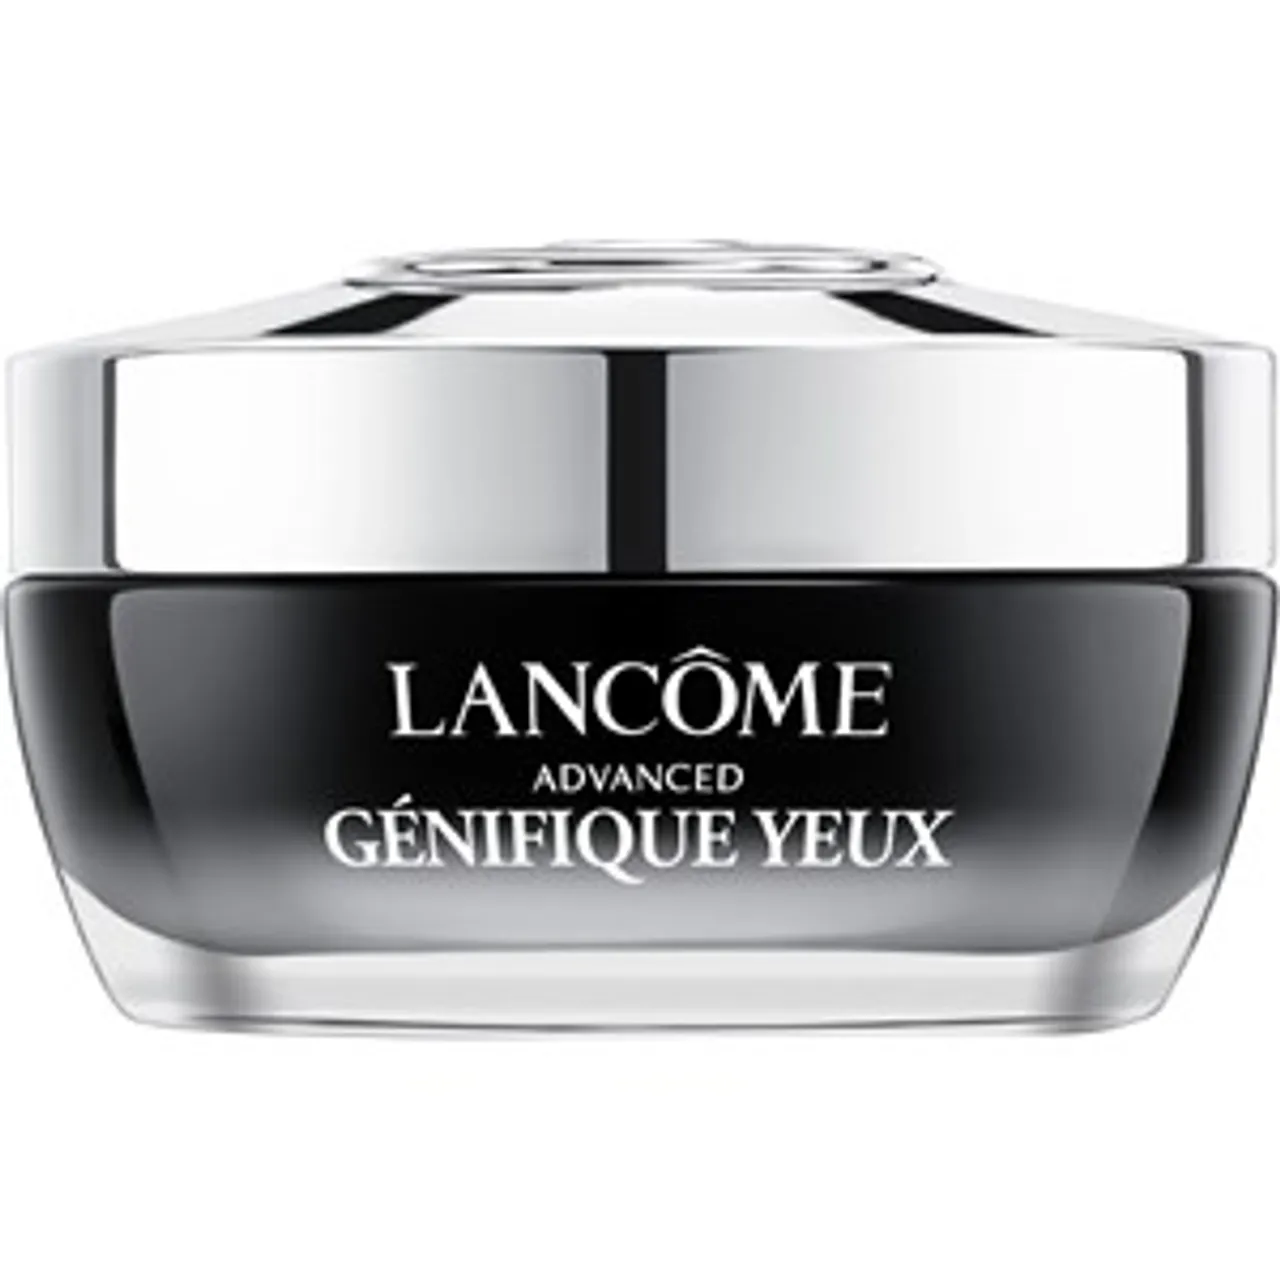 Lancôme Advanced Génifique Yeux Female 15 ml